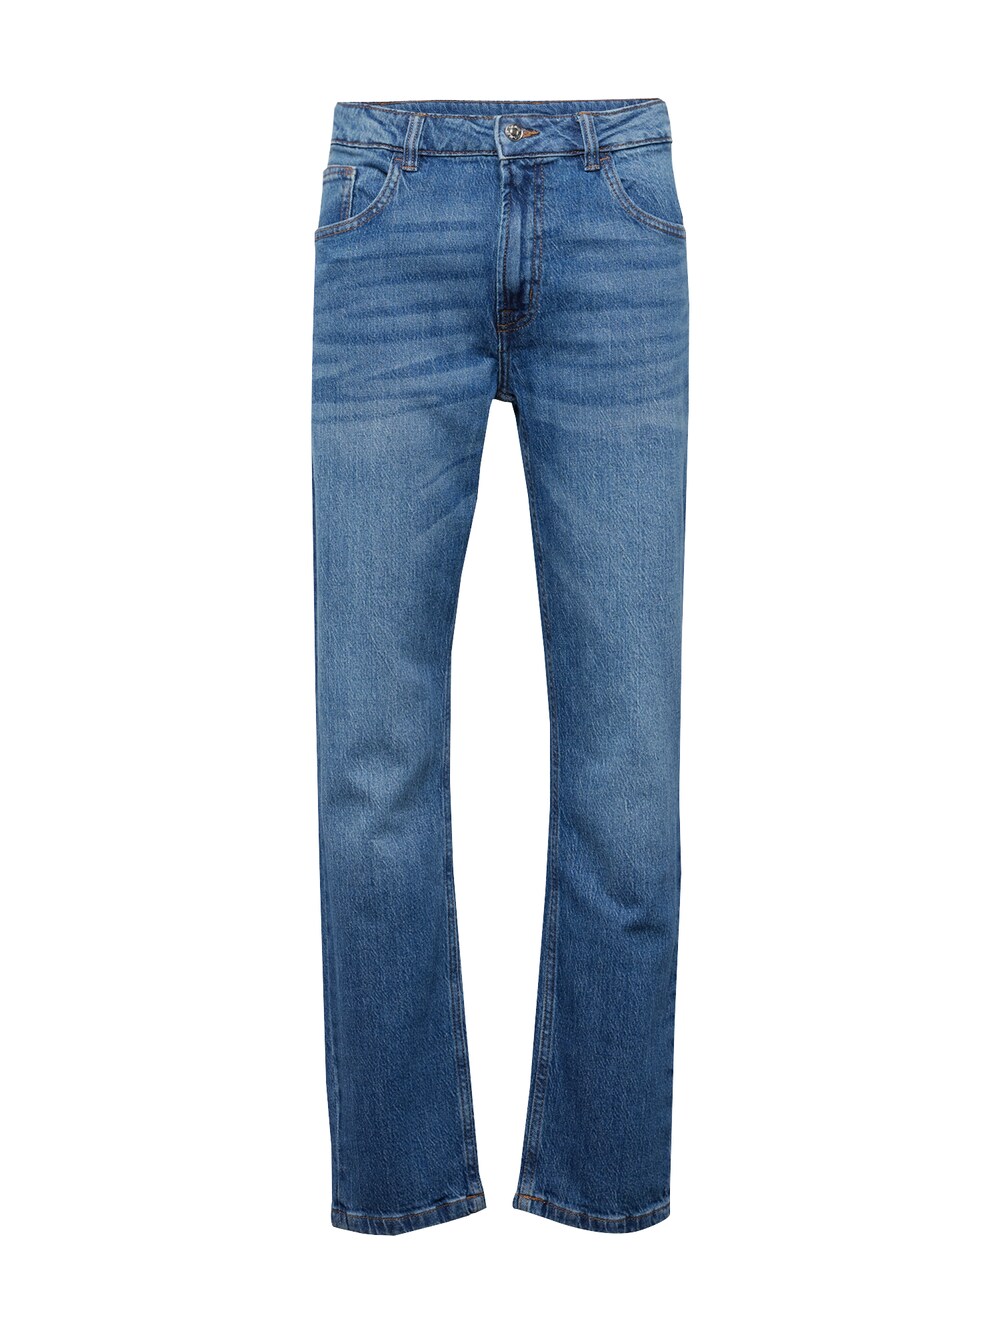 Обычные джинсы Denim Project Boston, синий